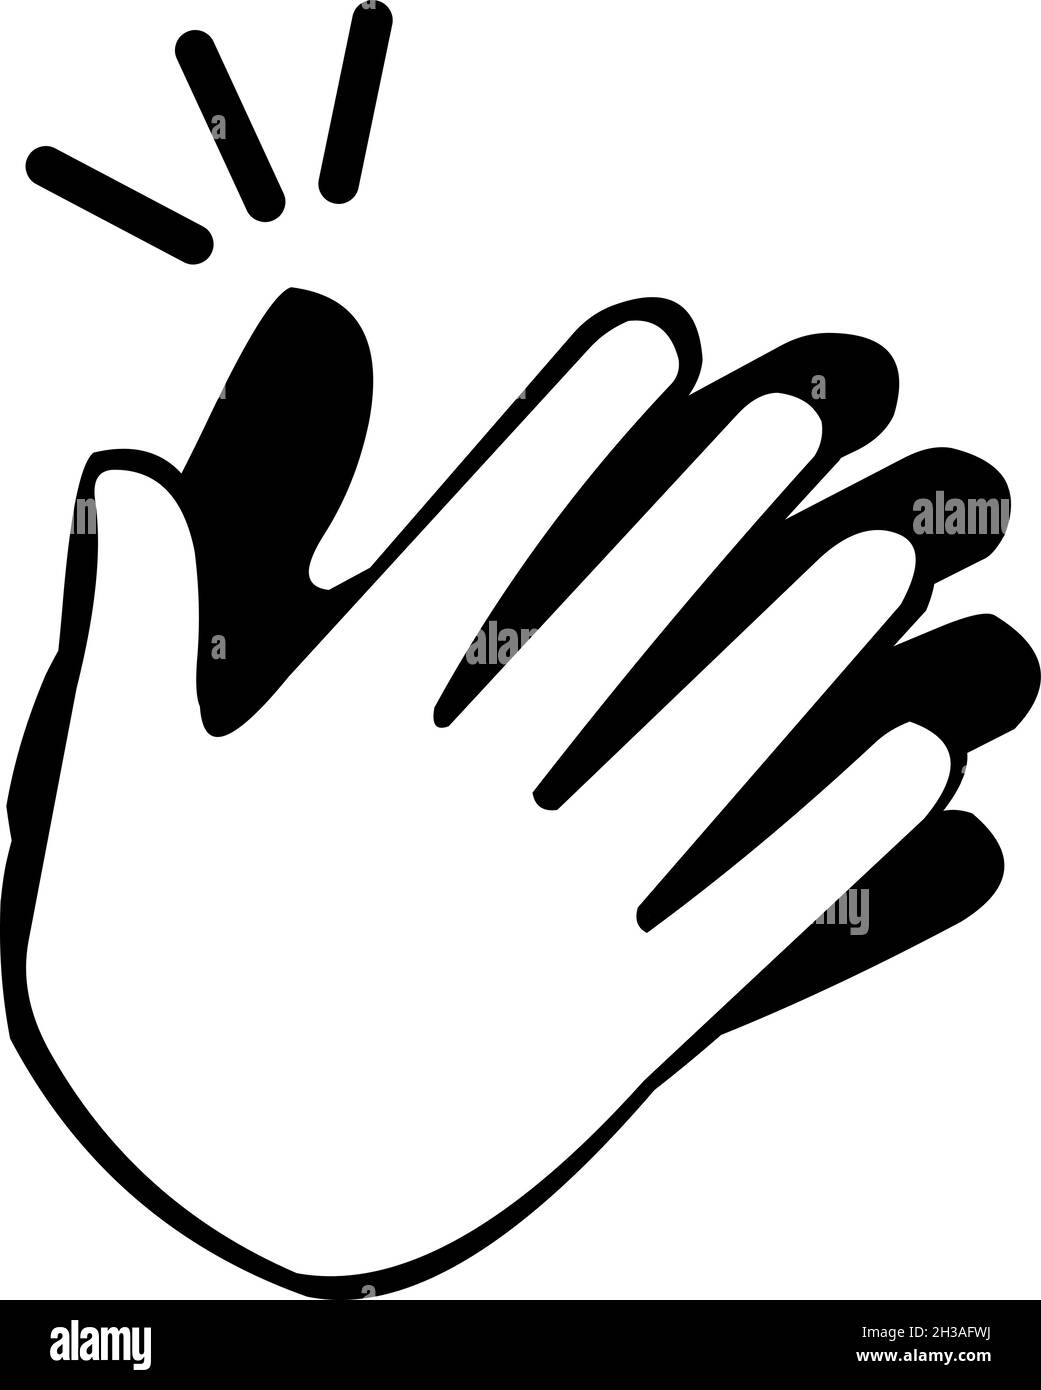 Vektor-Illustration von klatschenden Händen in schwarz und weiß Stock Vektor